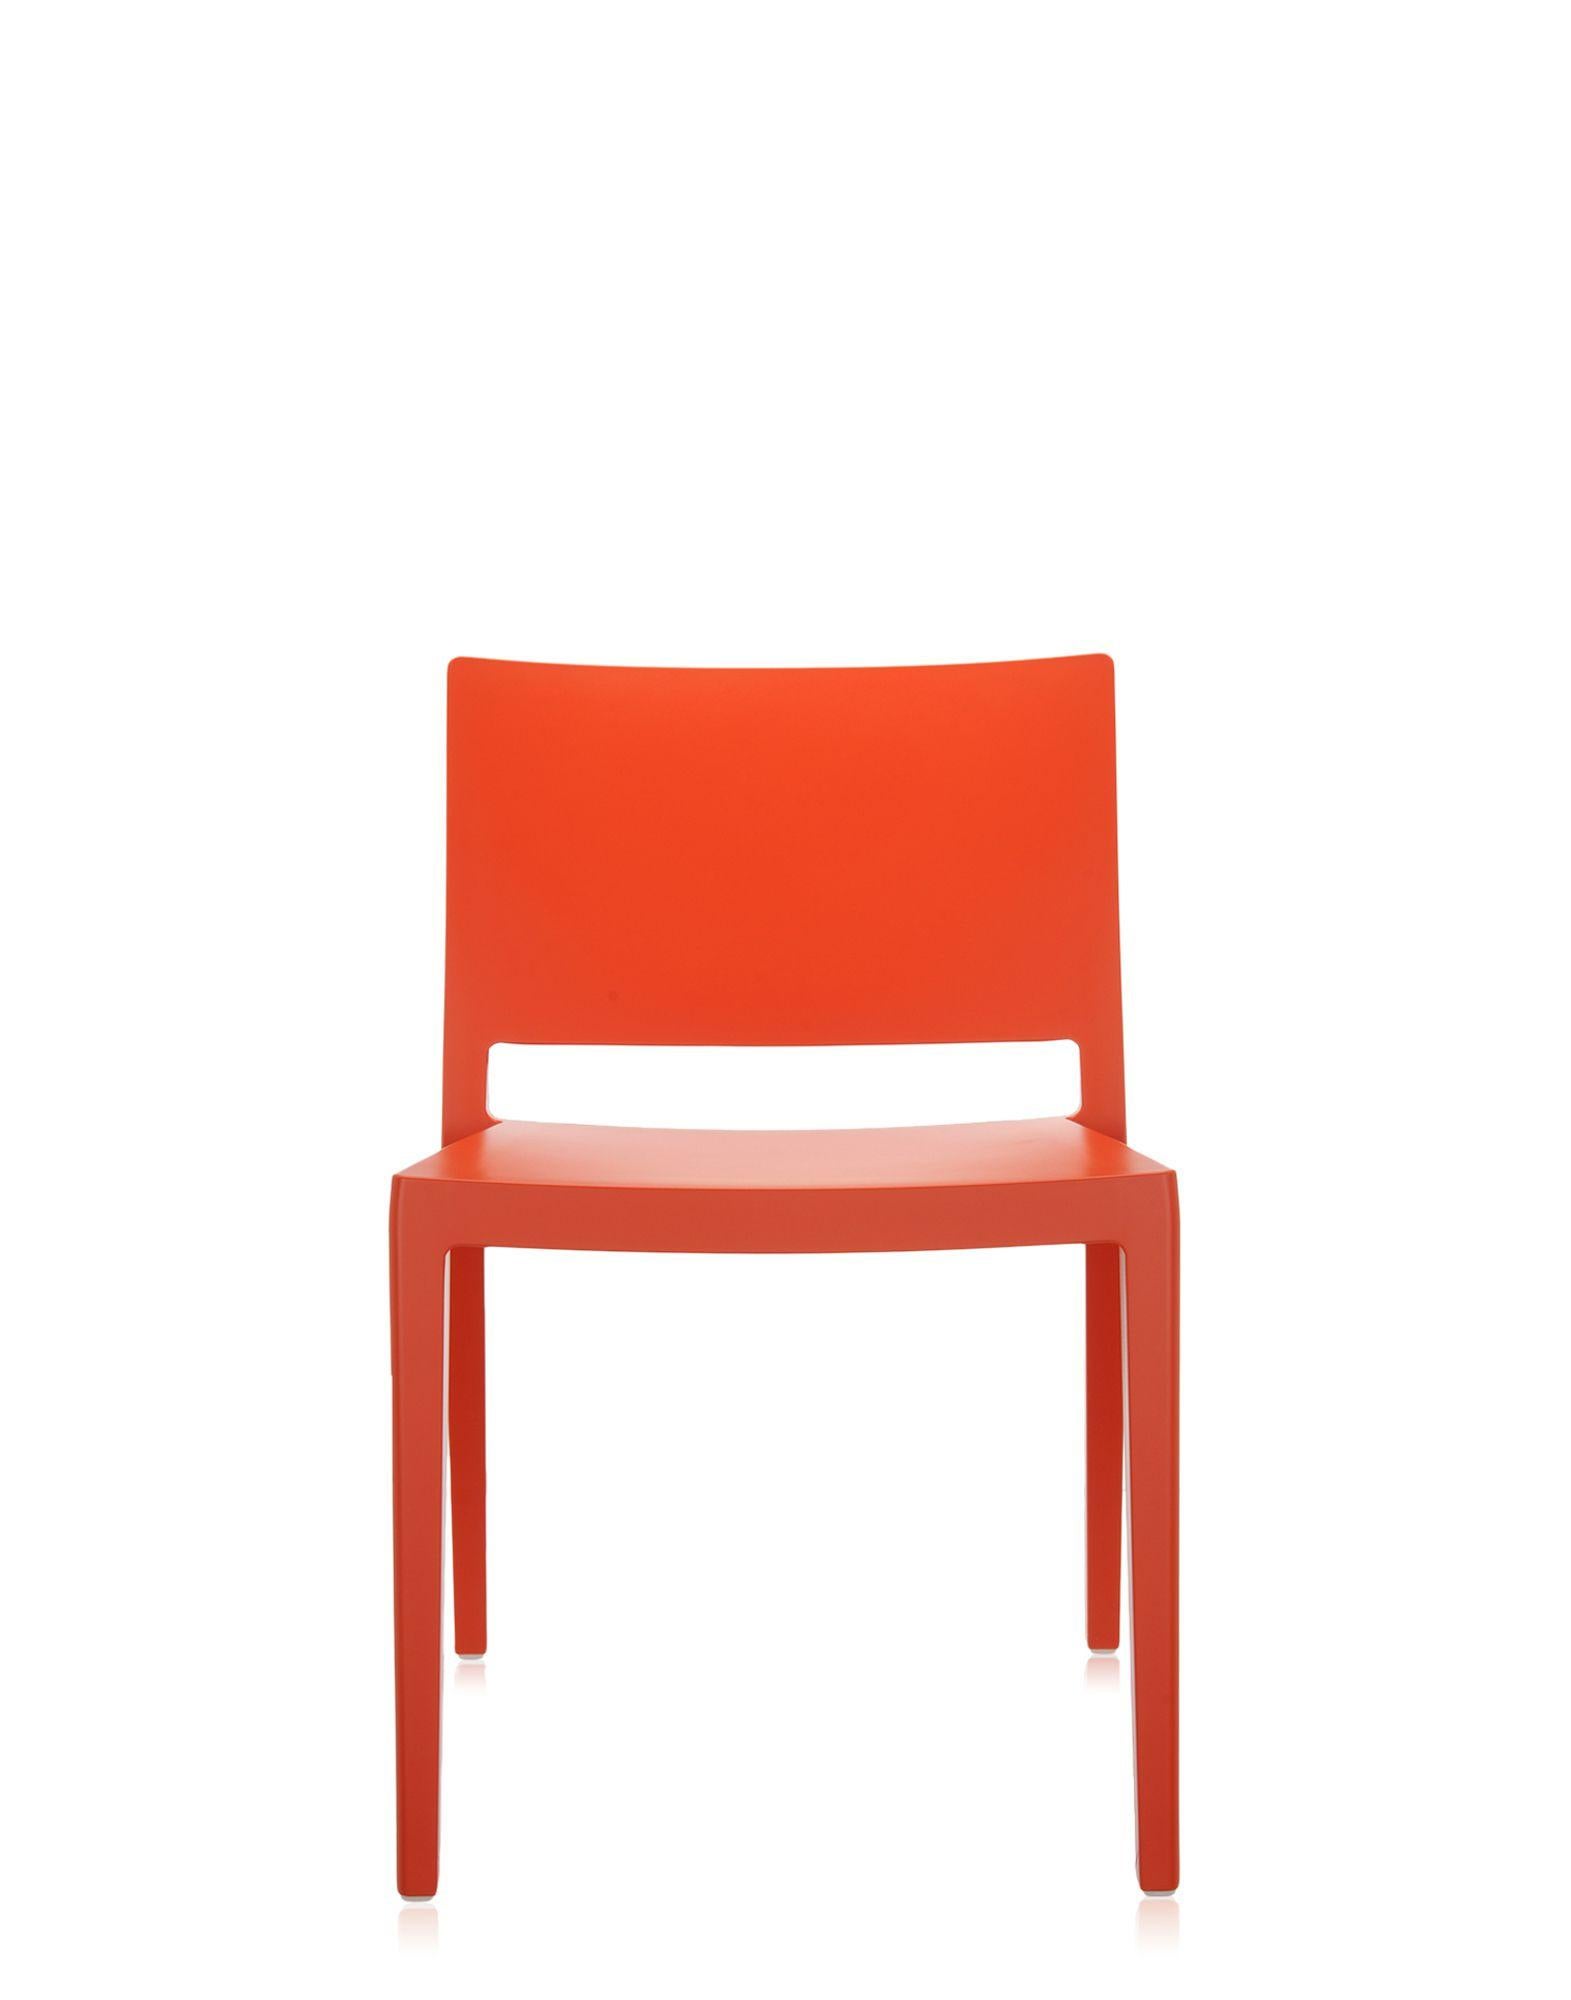 Une chaise légère, essentielle et rigoureuse. Sa ligne carrée est conçue par Piero Lissoni, avec une assise large et un dossier large et bas. Créé pour être utilisé autour des tables, il est né dans une gamme de couleurs brillantes et mates. La